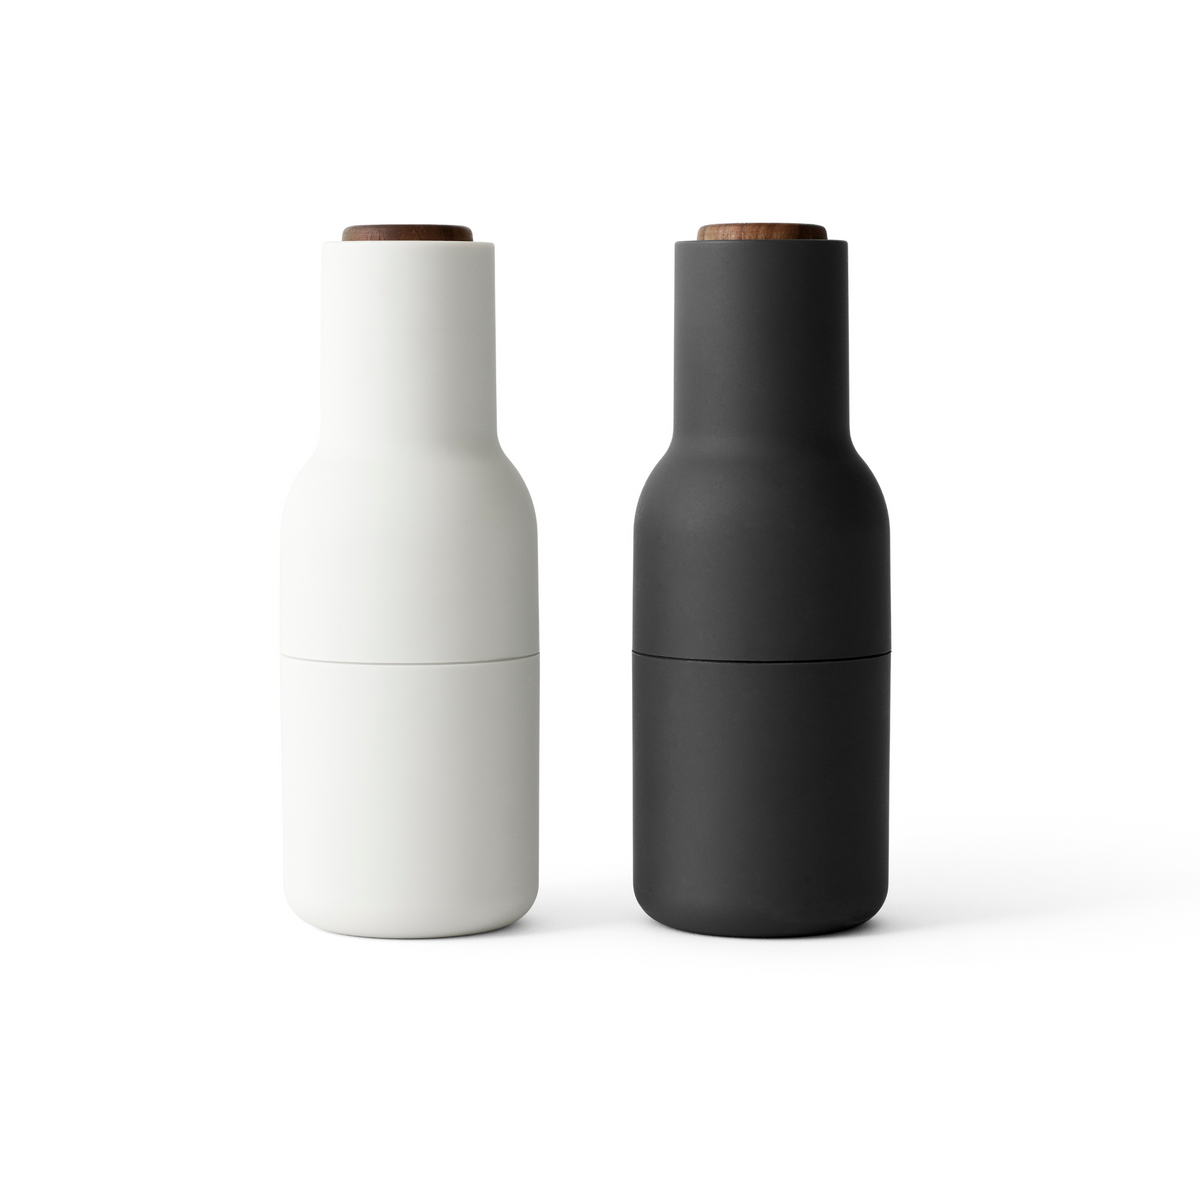 Menu - Bottle Grinder Set, Ash/Carbon with Walnut Lid